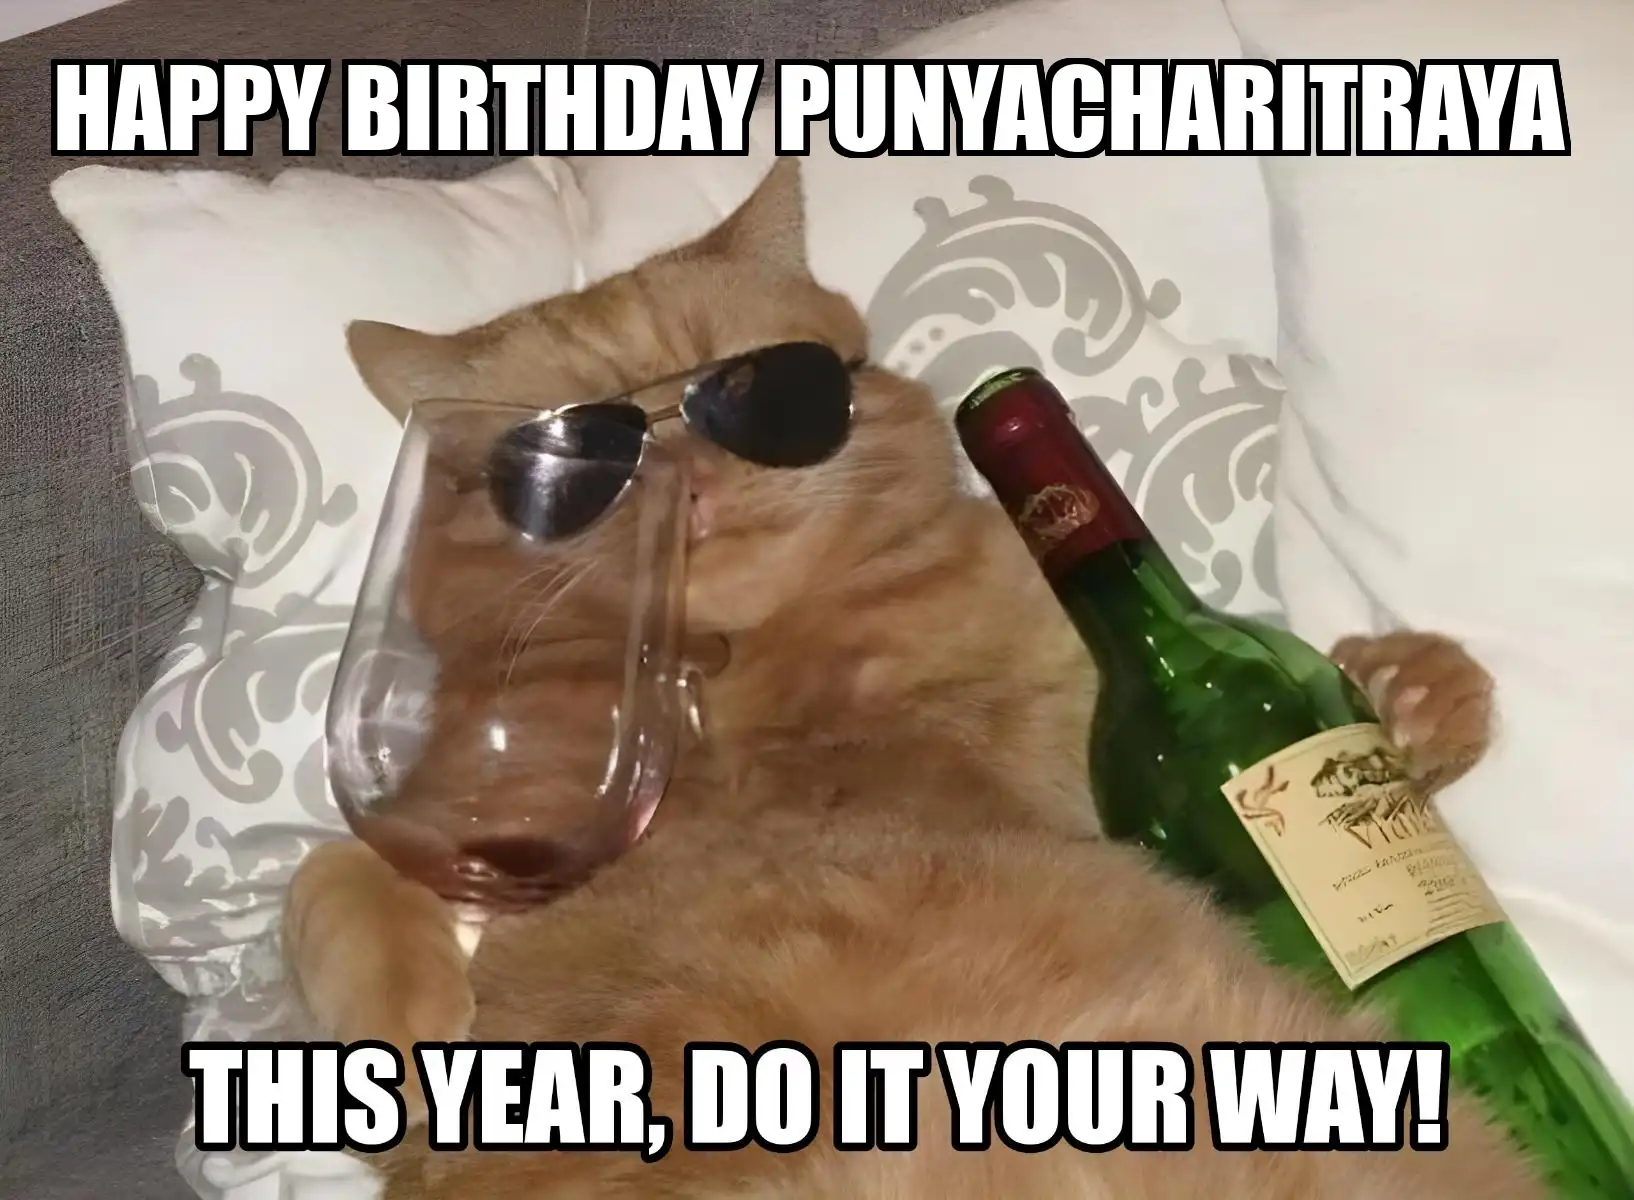 Happy Birthday Punyacharitraya This Year Do It Your Way Meme